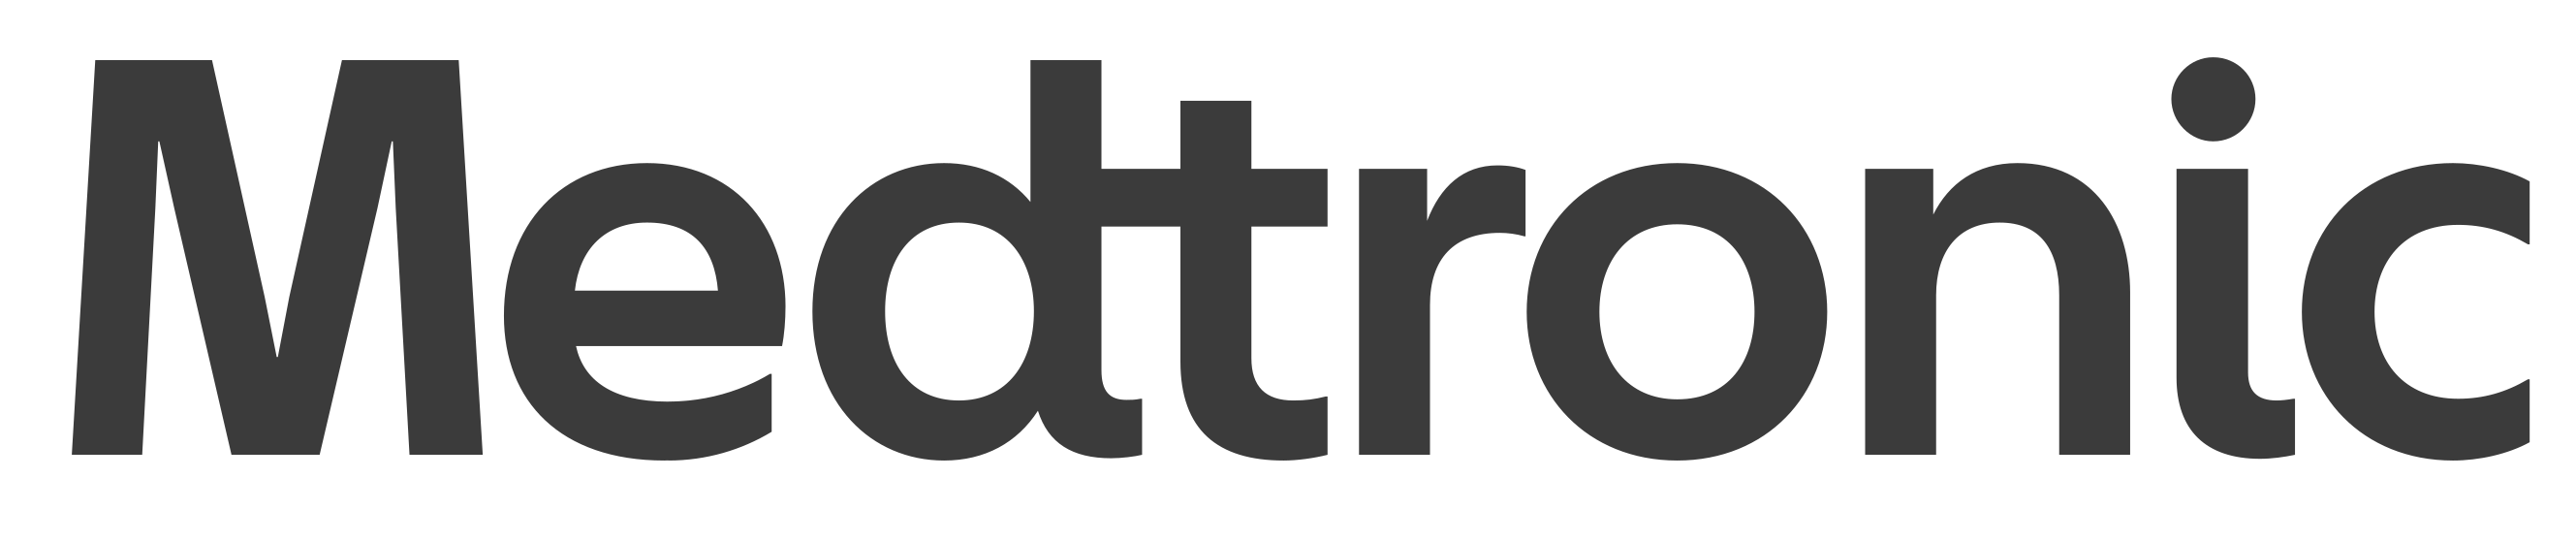 Medtronic_logo.BW